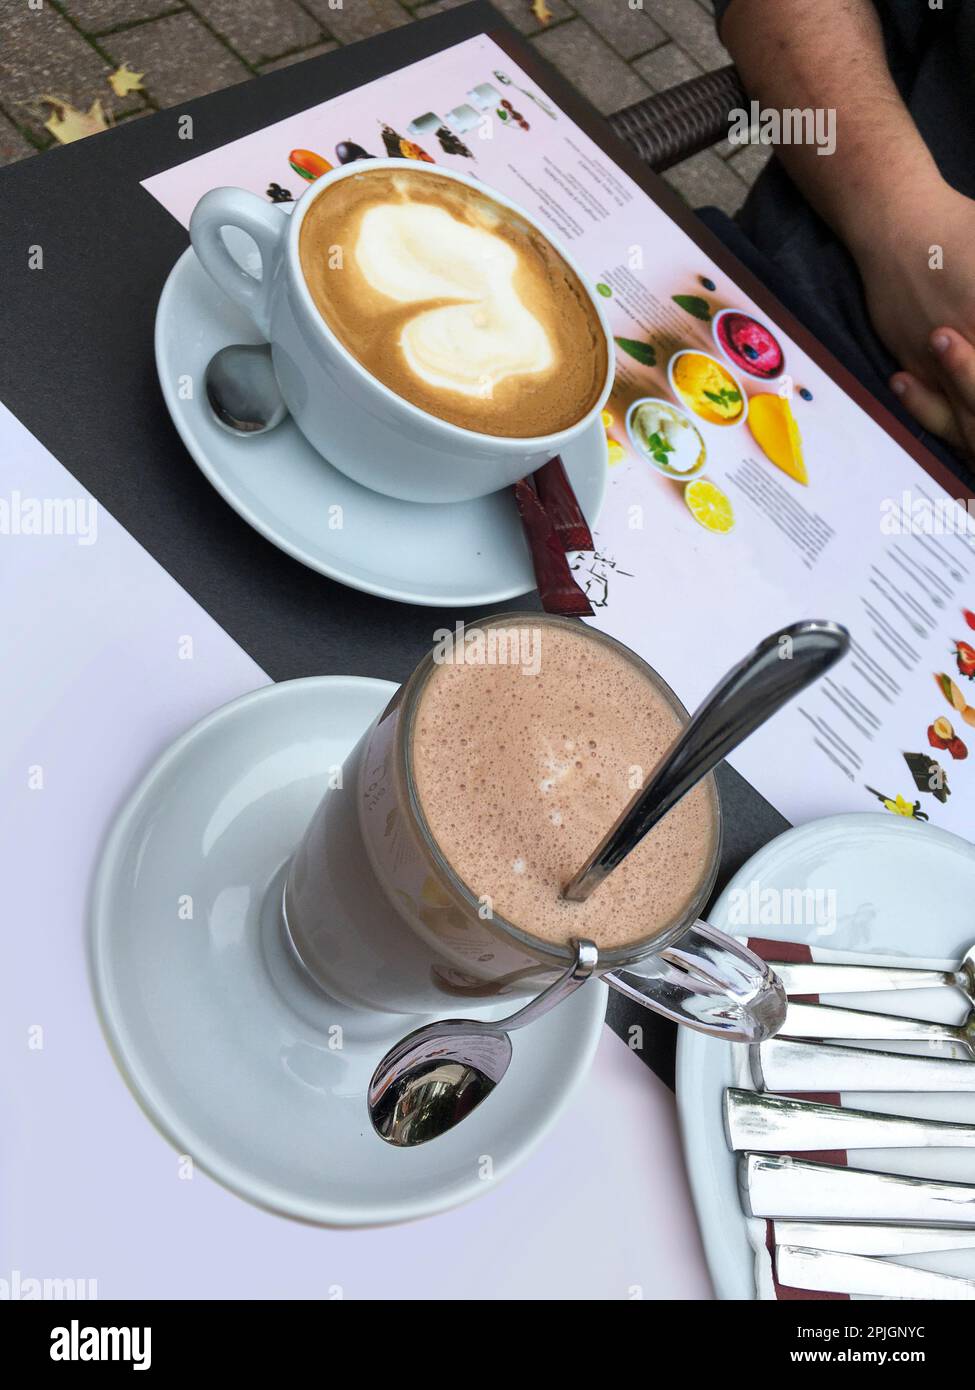 Eine Tasse Cappuccino und ein Glas heiße Schokolade auf dem Tisch Foto Stock